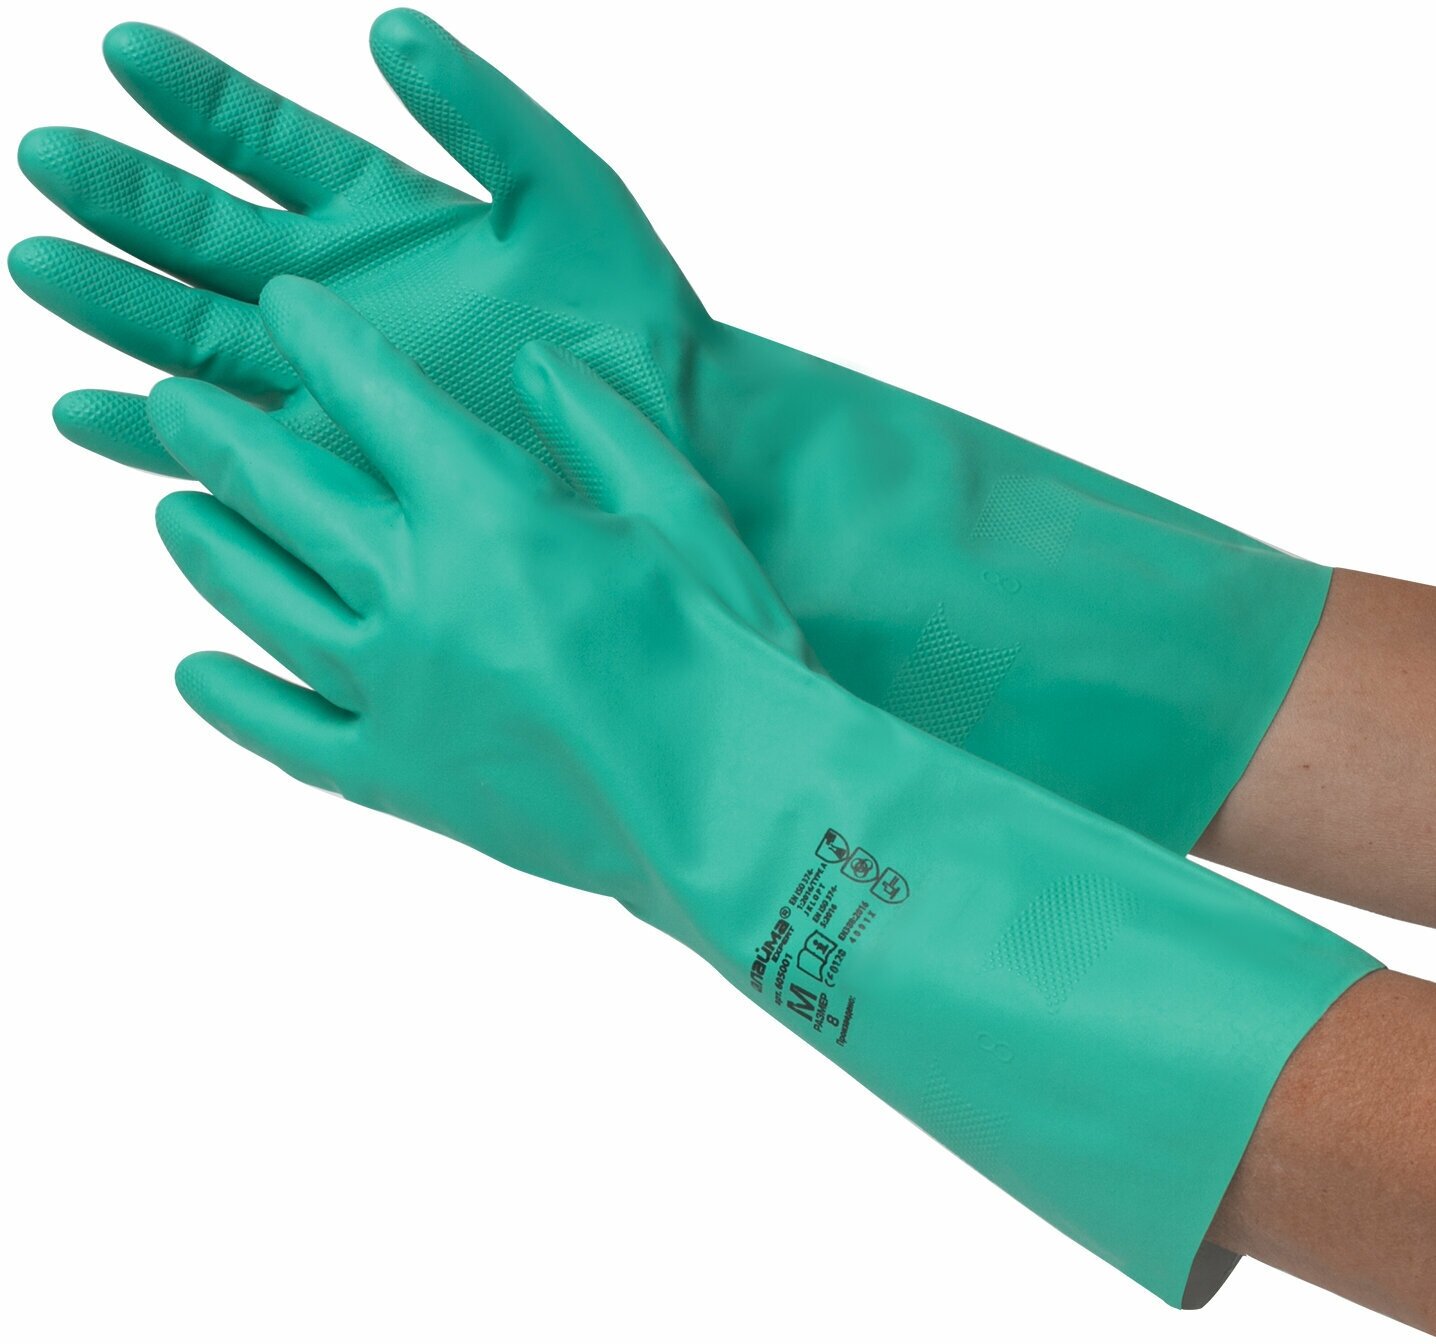 Перчатки нитриловые LAIMA EXPERT нитрил, 70 г/пара, химически устойчивые, гипоаллергенные, размер 8, М (средний), 605001